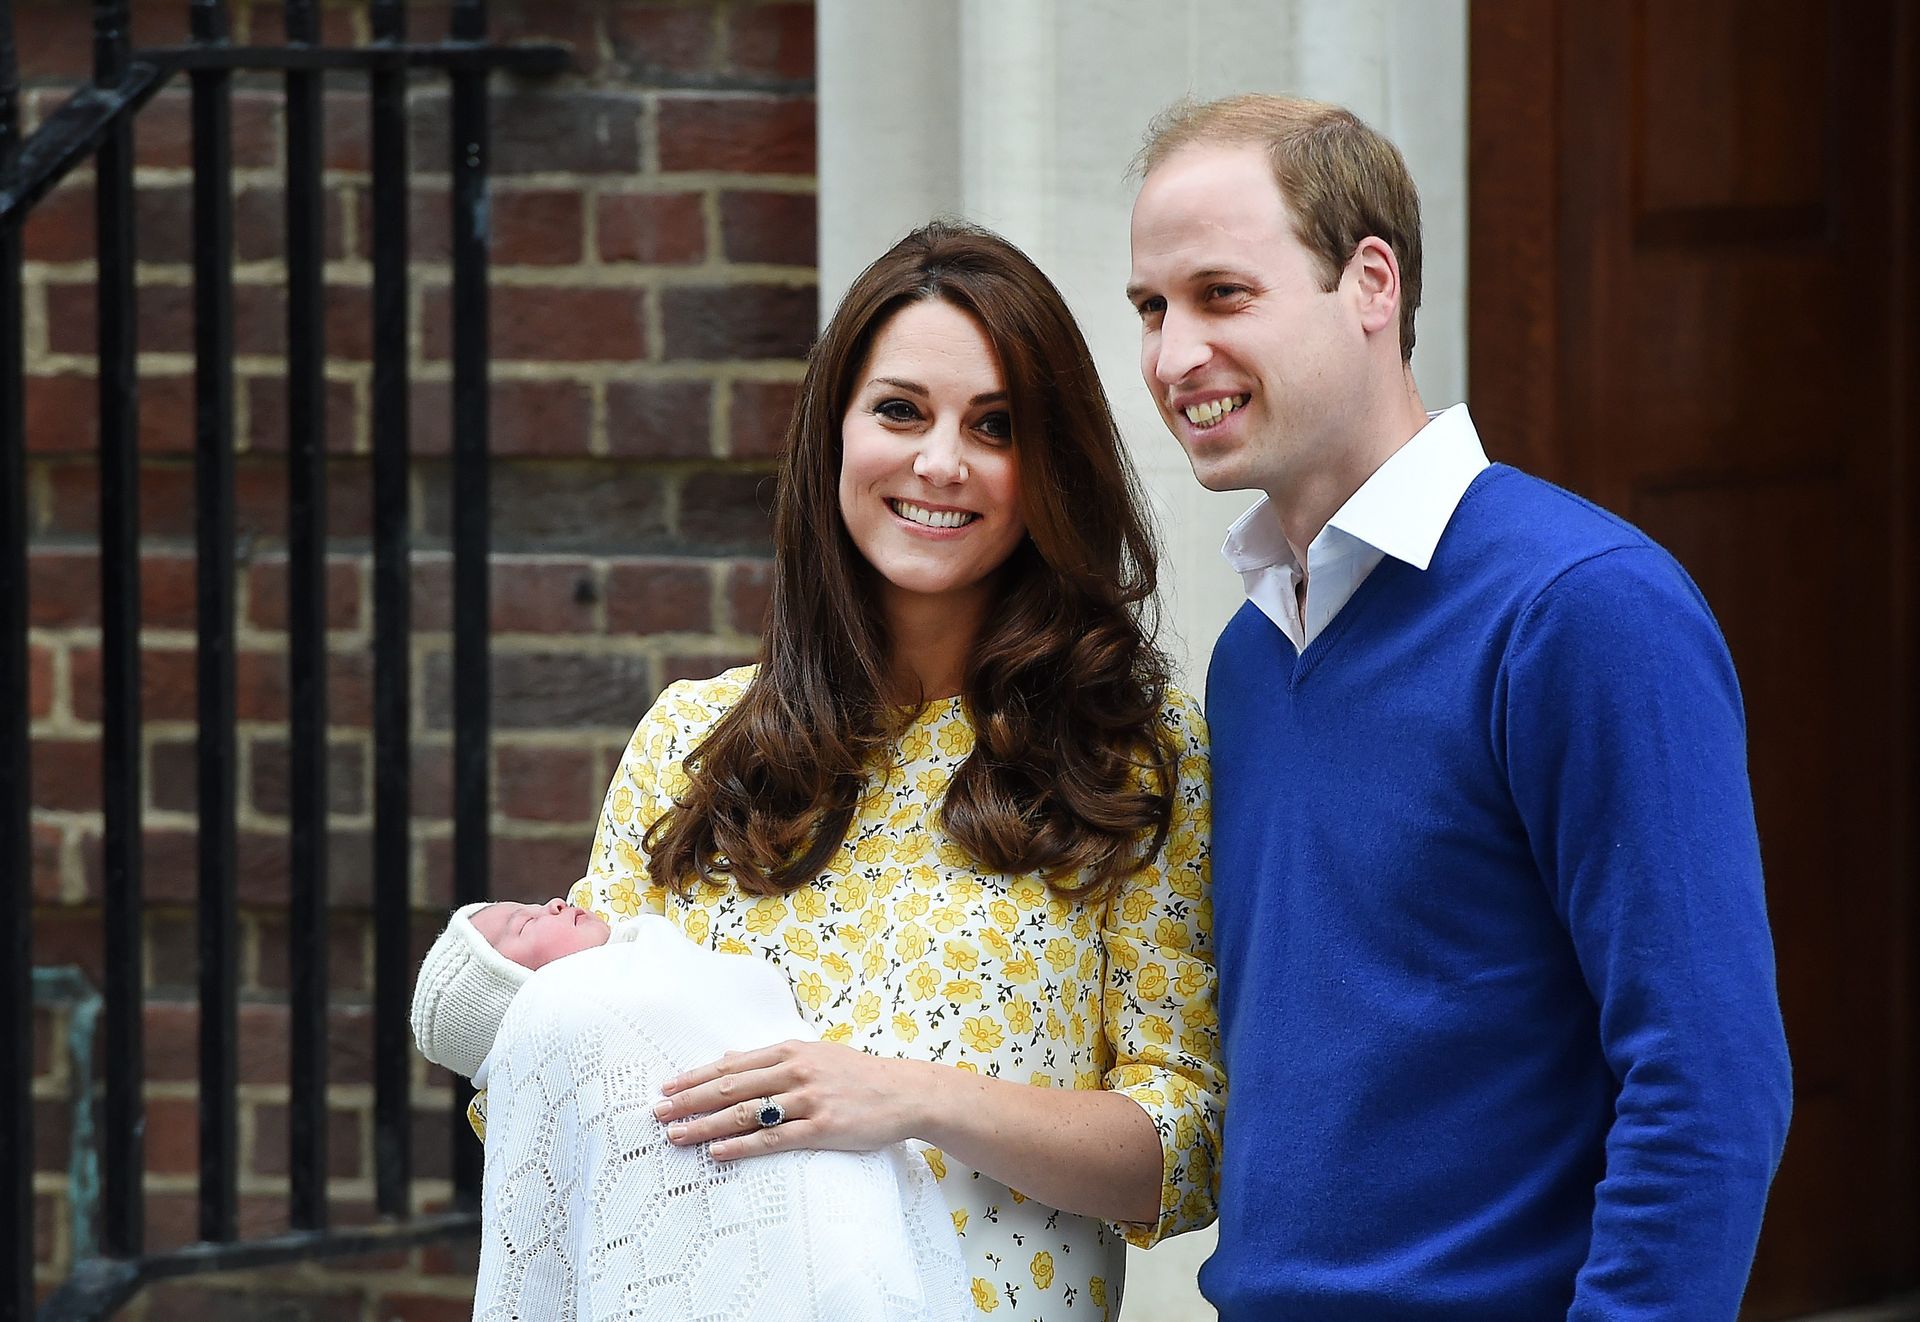 2015 - Prins William en Catherine poseren met hun pasgeboren dochter, prinses Charlotte